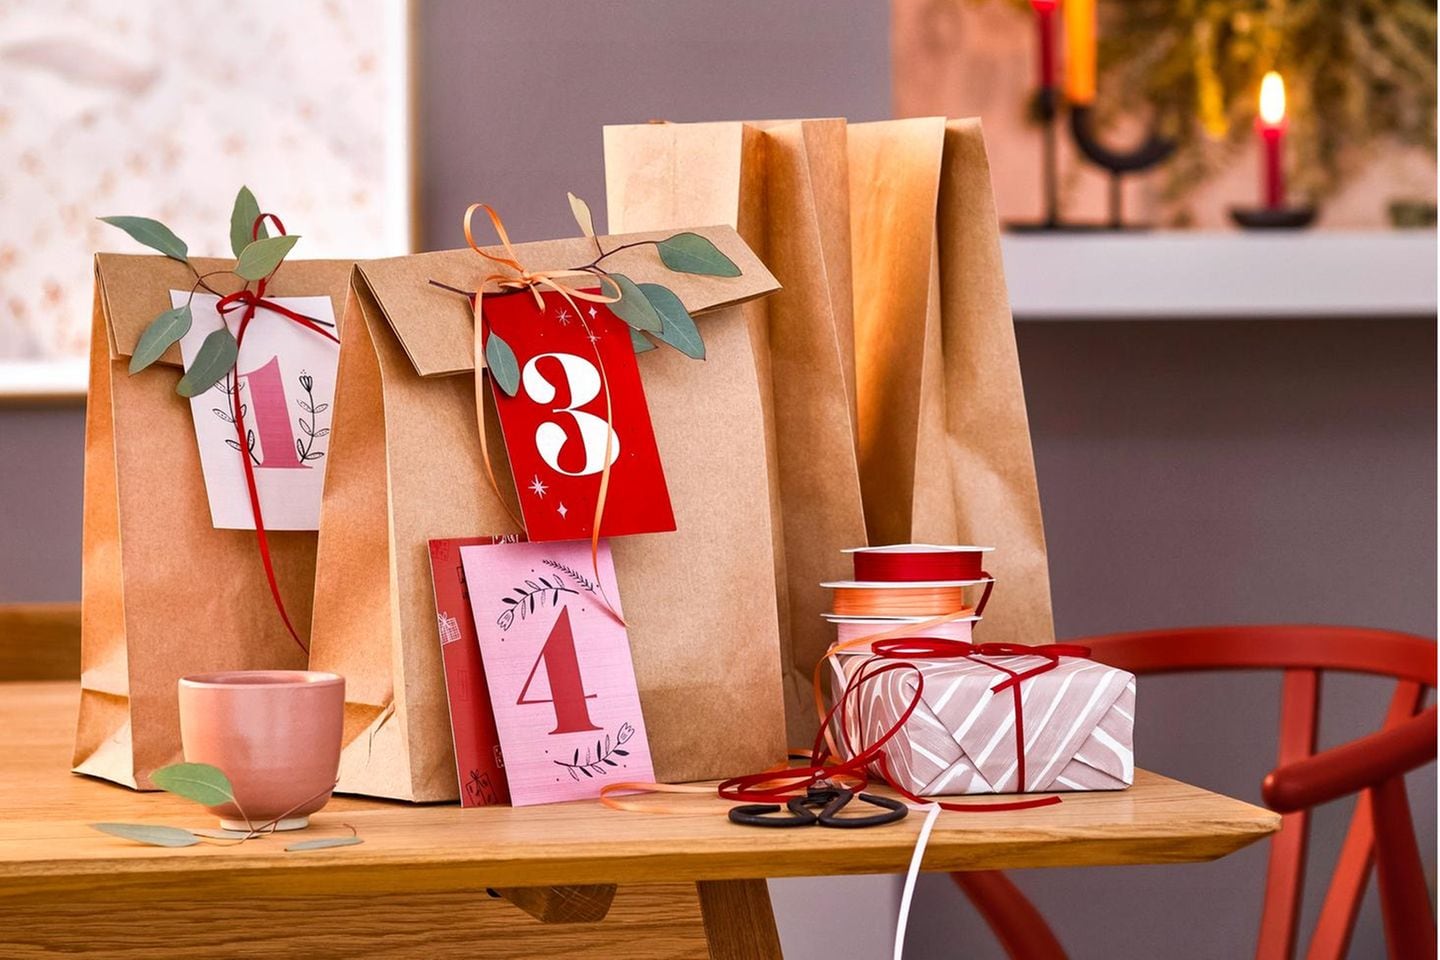 Adventstüten aus einfachem Papier mit weihnachtlichen Geschenkanhängern und Eukalyptuszweigen auf einem Holztisch